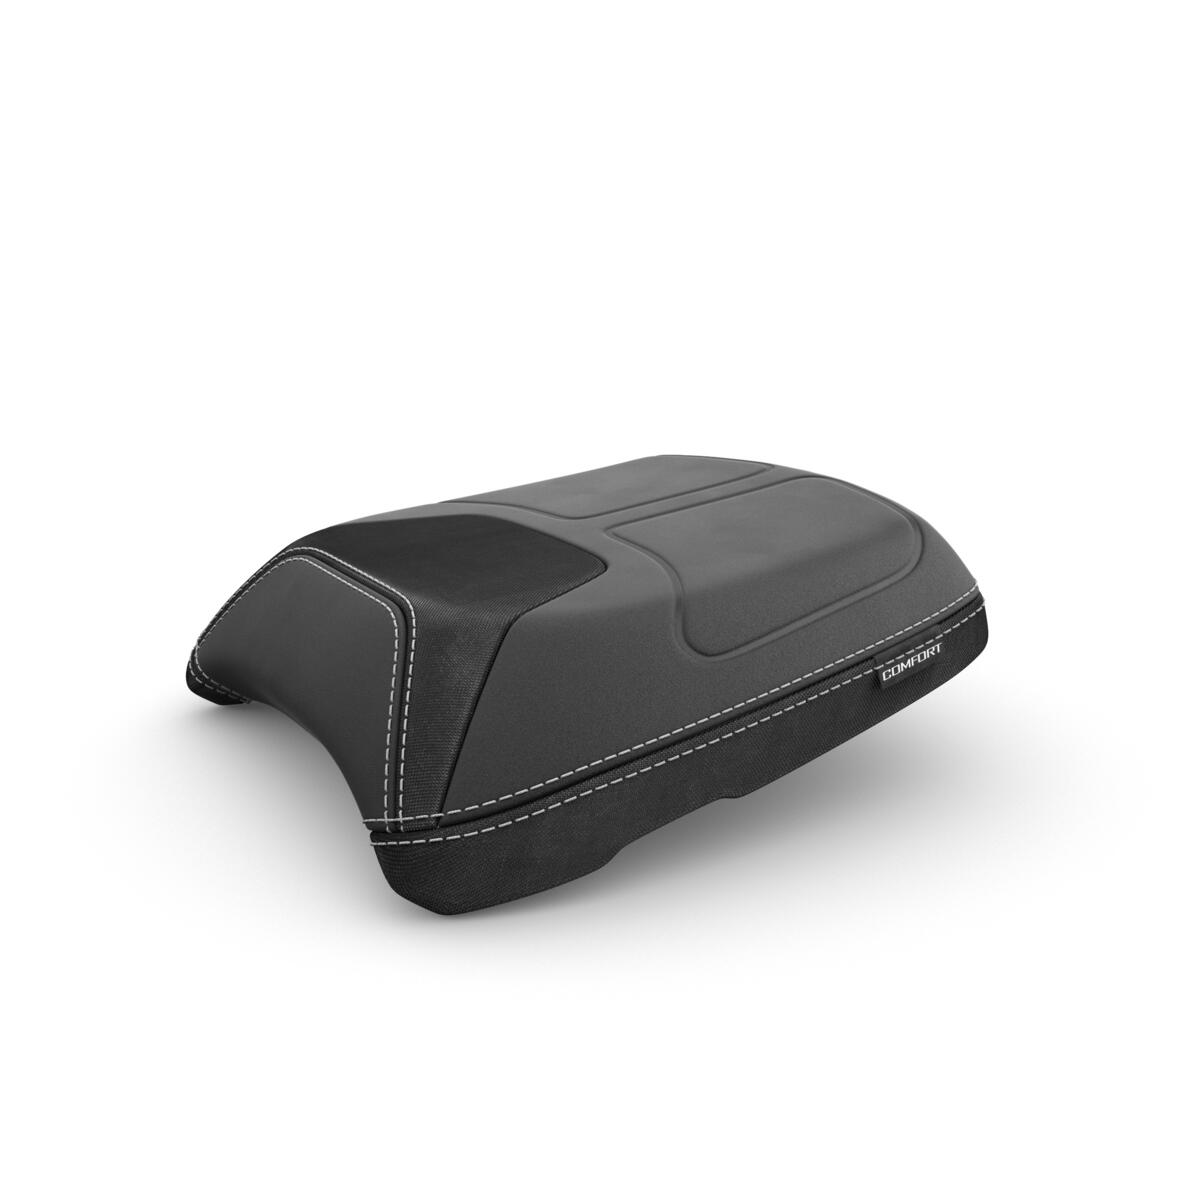 Komfortní sedlo spolujezdce navržené ke zvýšení komfortu při jízdě na dlouhou vzdálenost na modelu TRACER 9. Díky pevné pěnové základně a kapsám s měkkým povrchem si vyjížďku ve dvou rozhodně užijete.